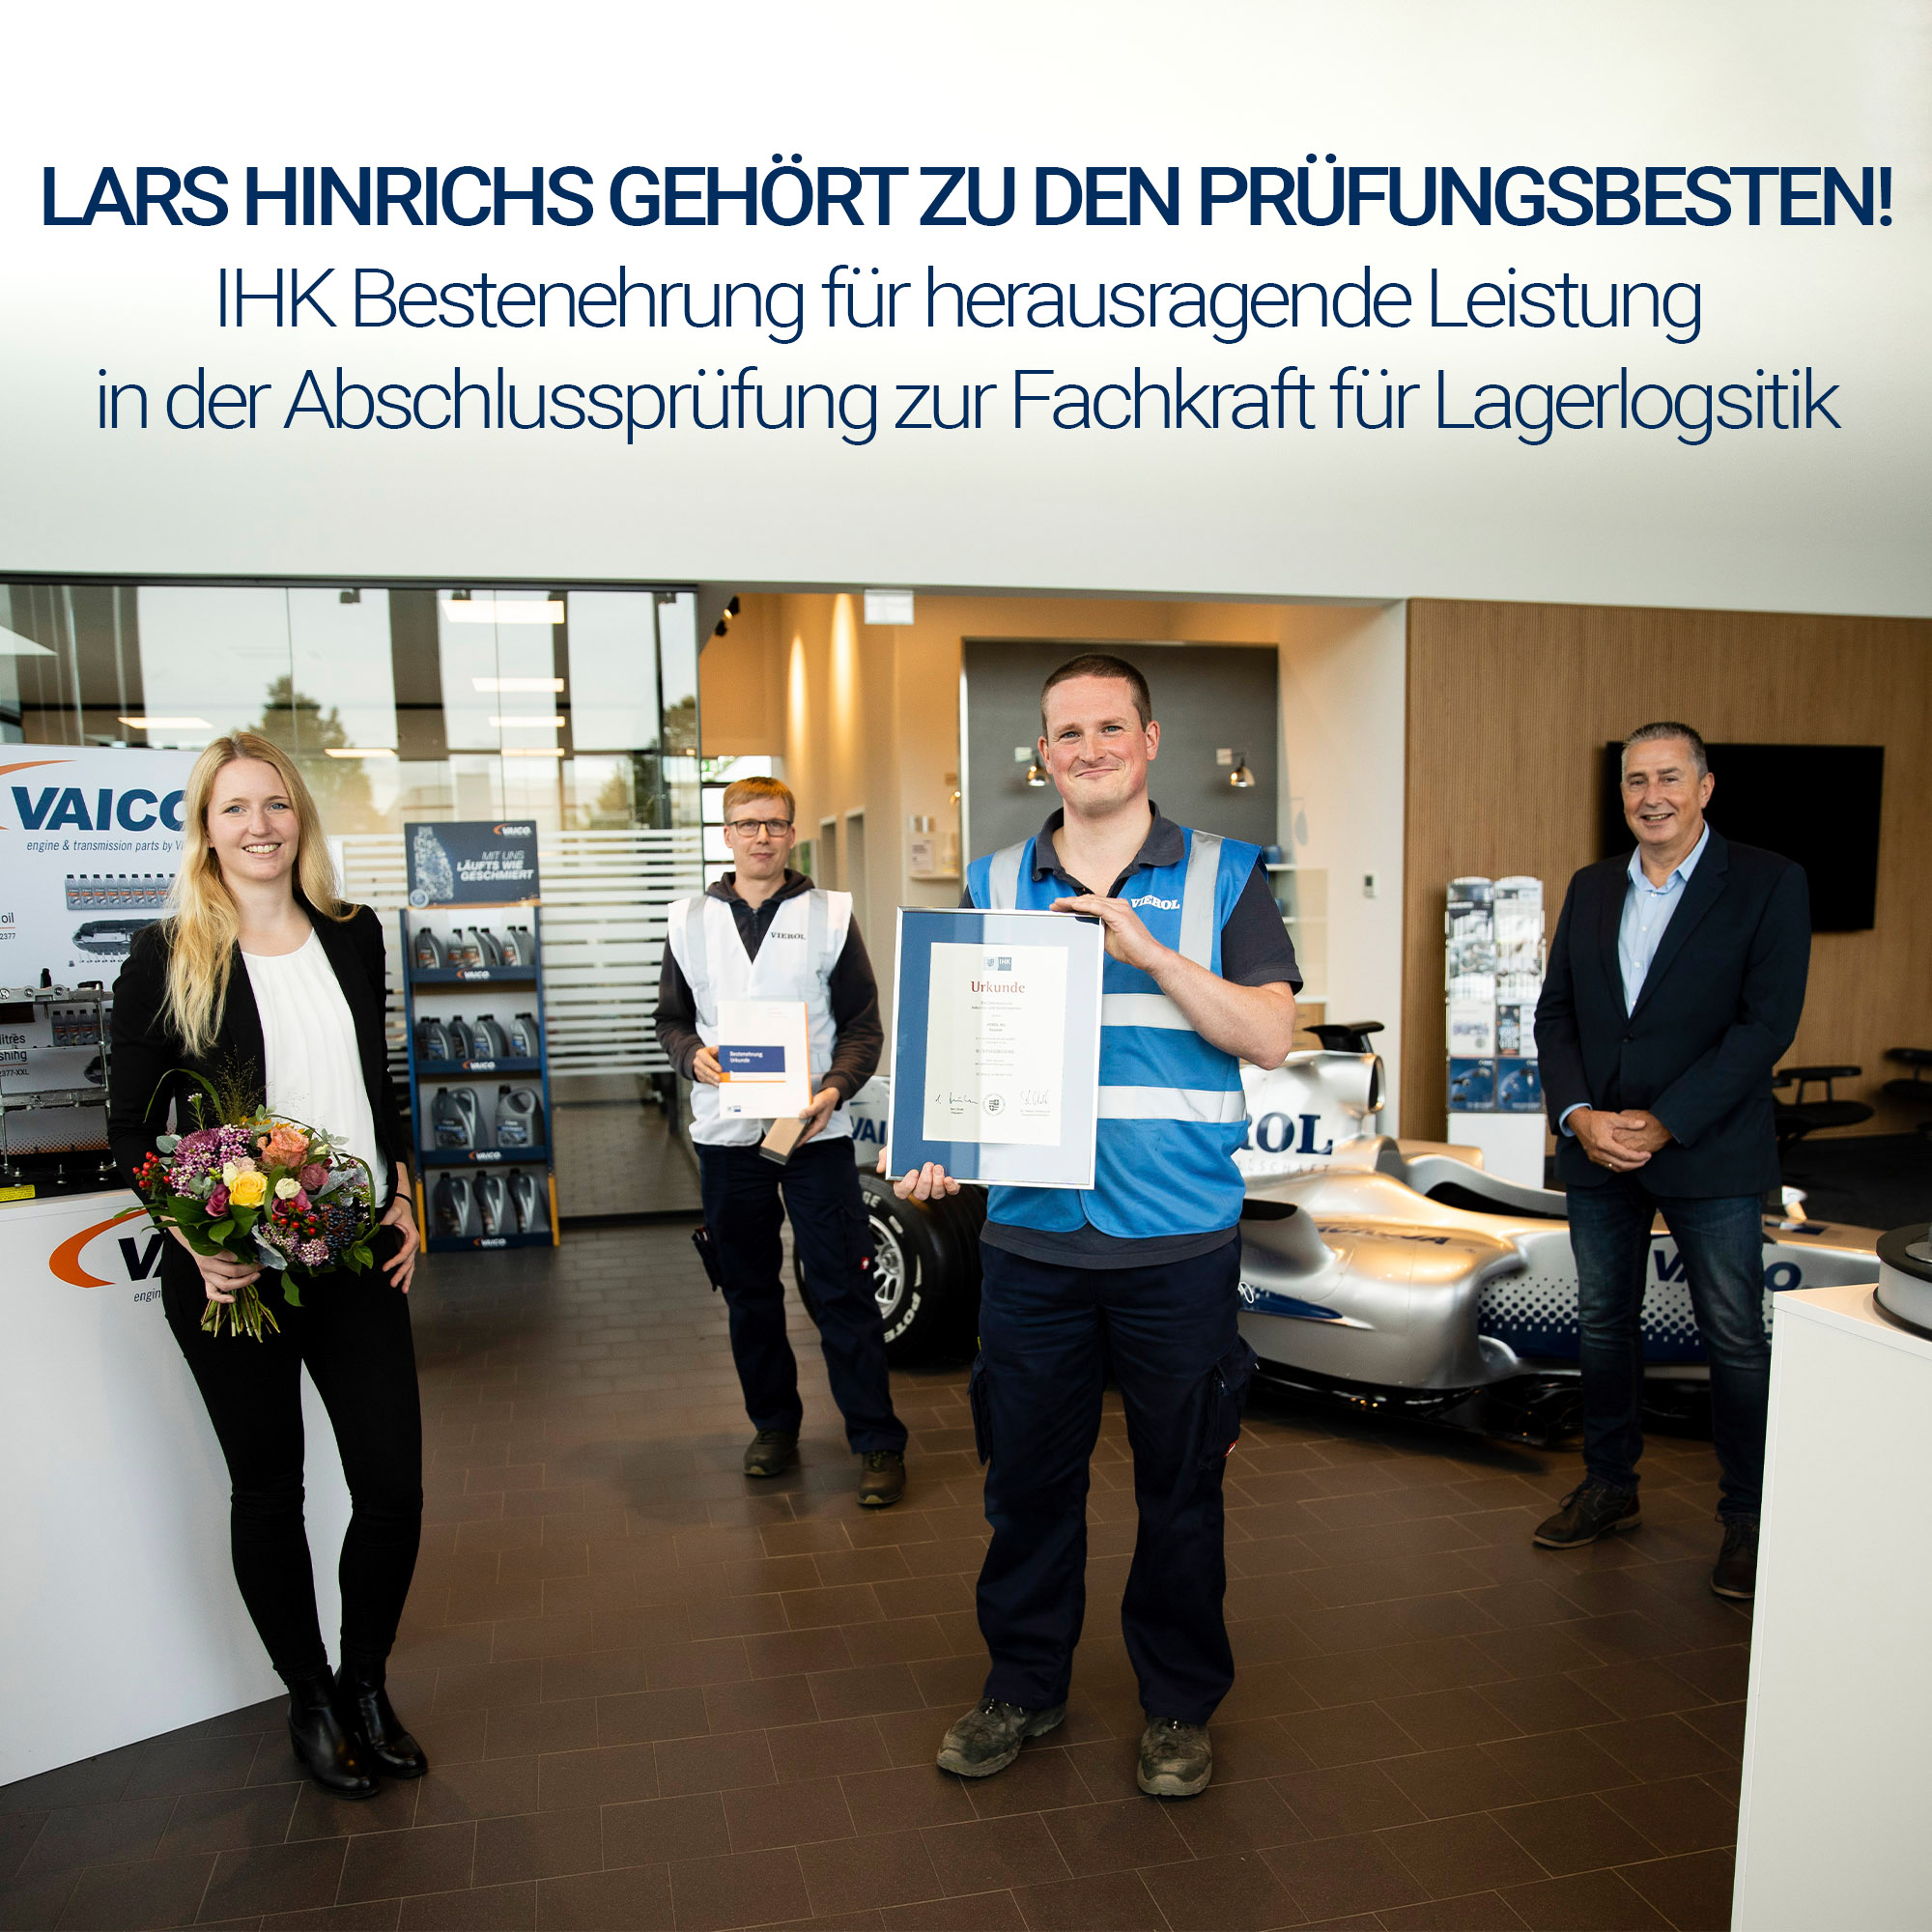 IHK best honour for Lars Hinrich - VIEROL Ausbildung – VIEROL ...